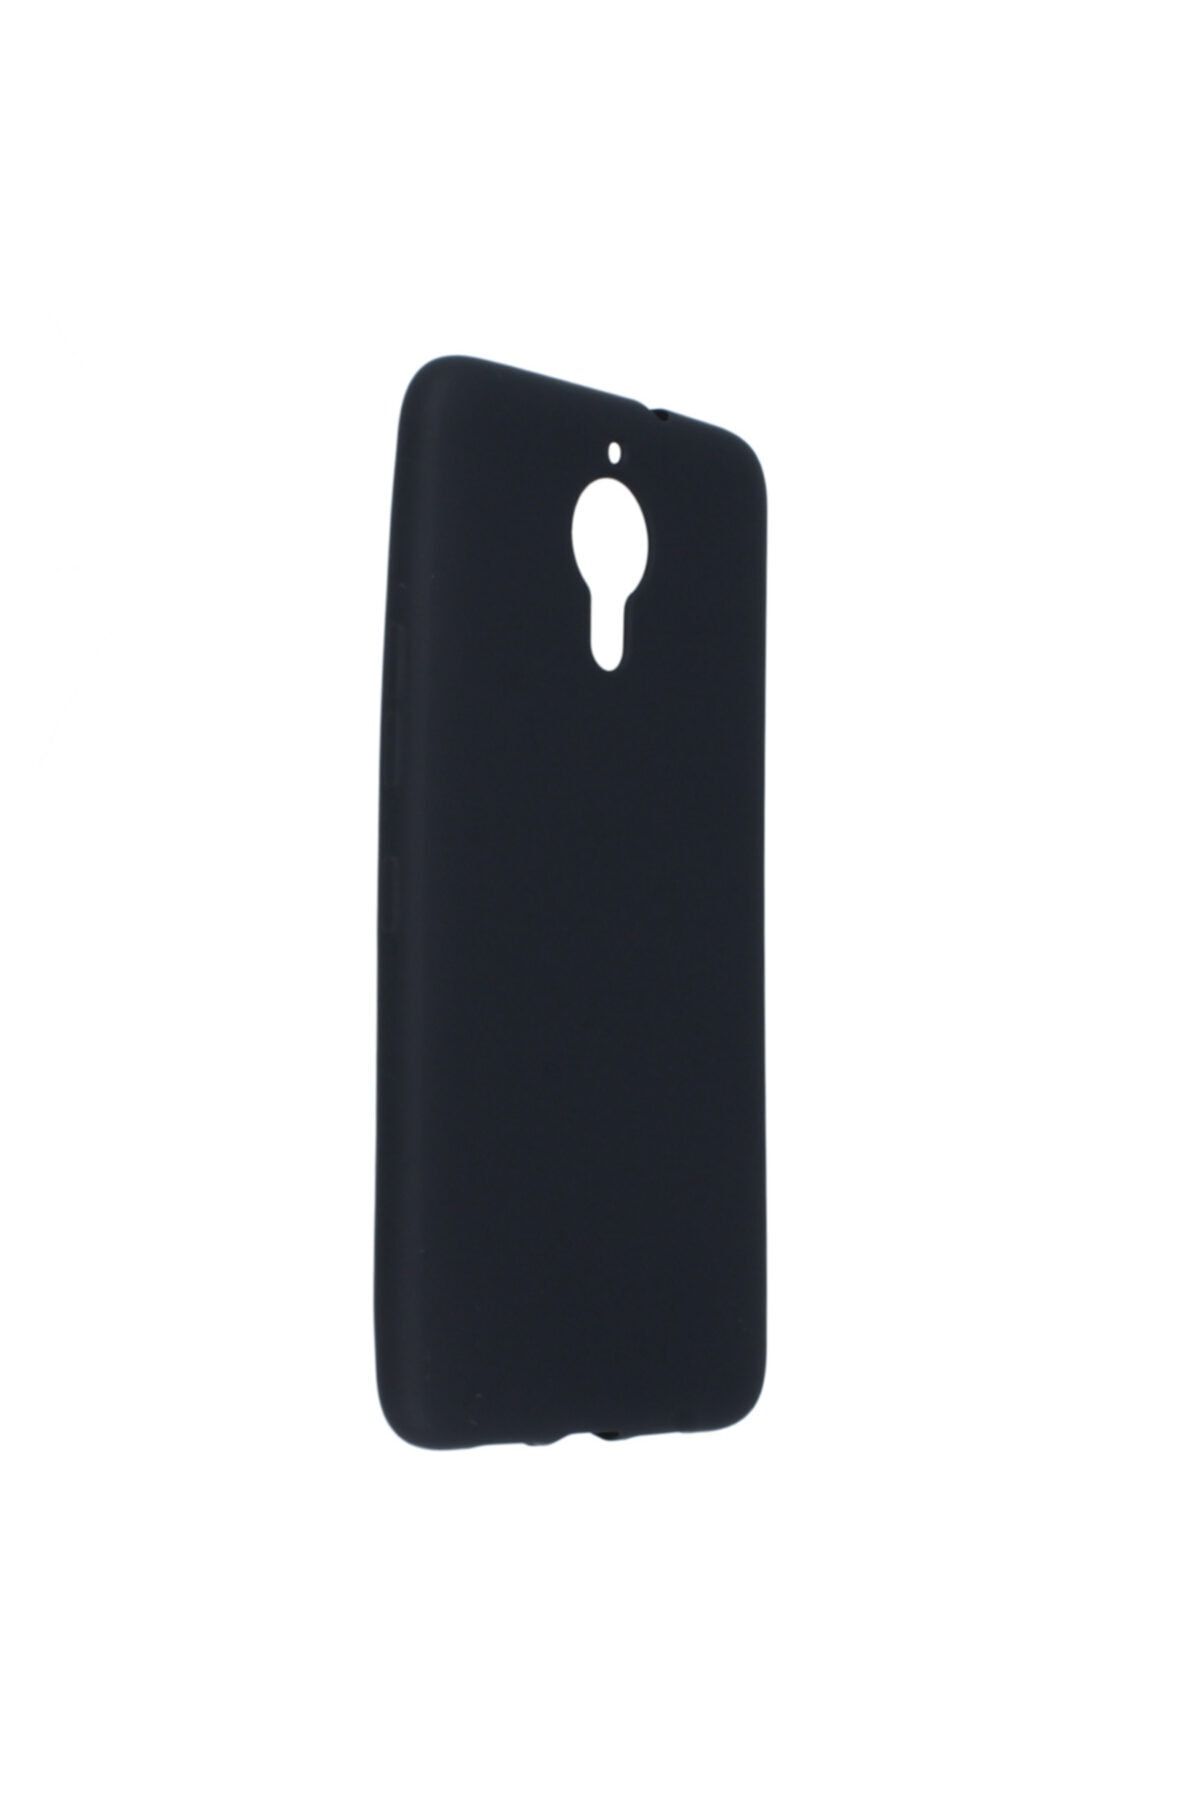 General Mobile 5 Plus Uyumlu  Kılıf Yumuşak Pürüzsüz Esnek New Style Case Siyah